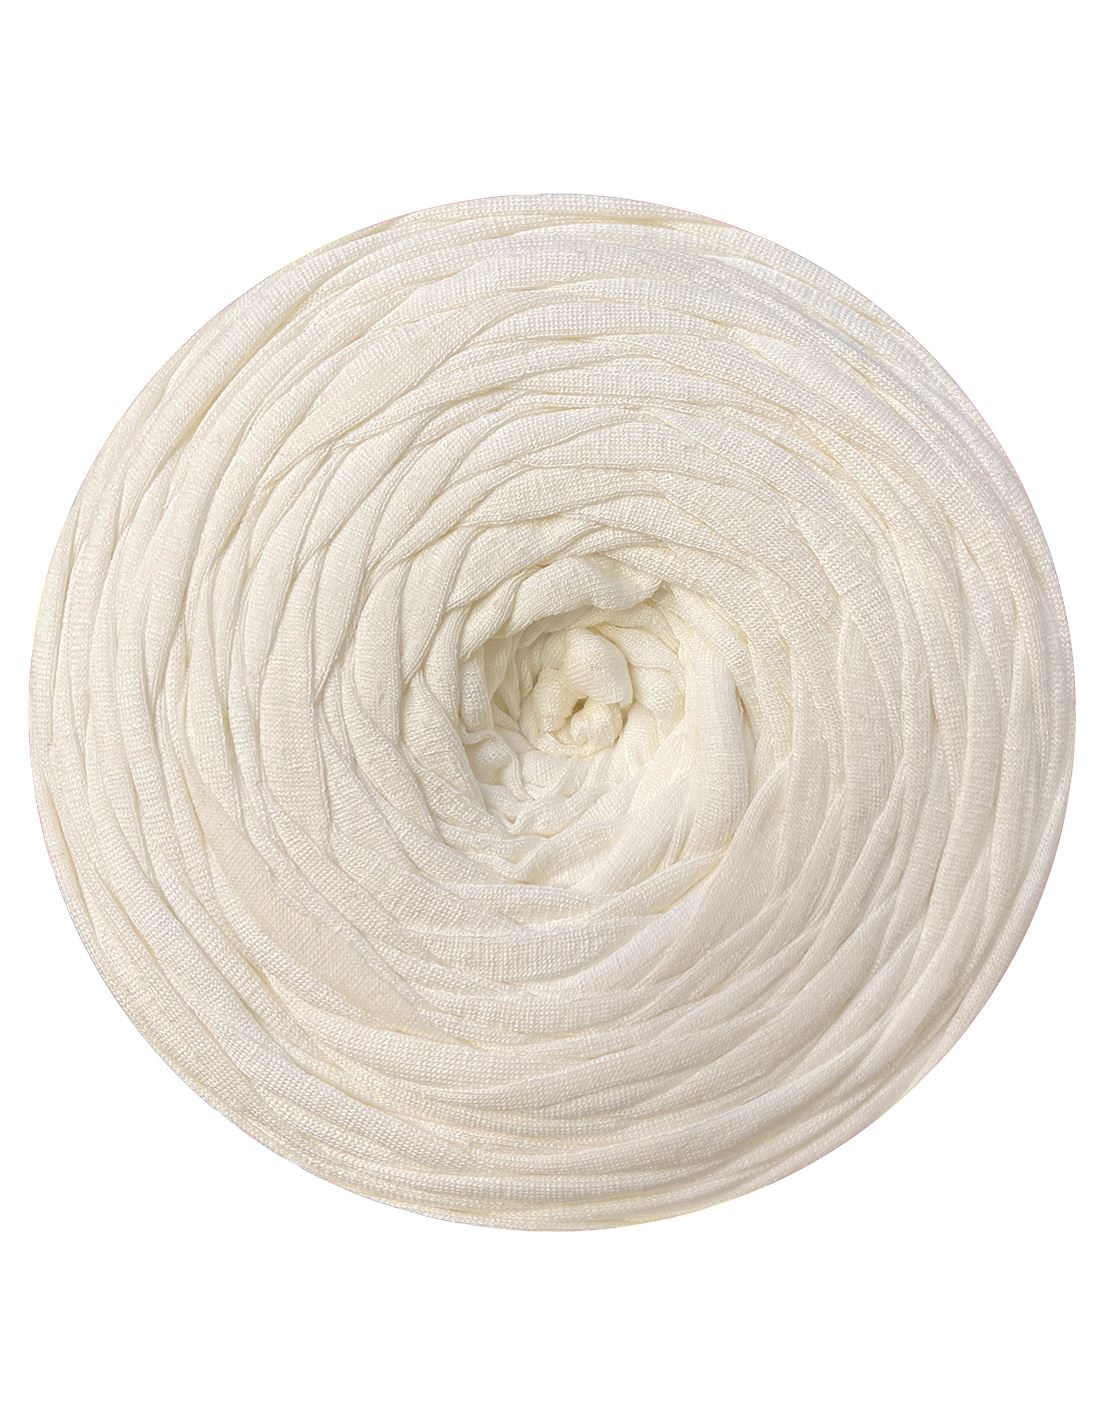 Pale cream t-shirt yarn by Rescue Yarn (100-120m)